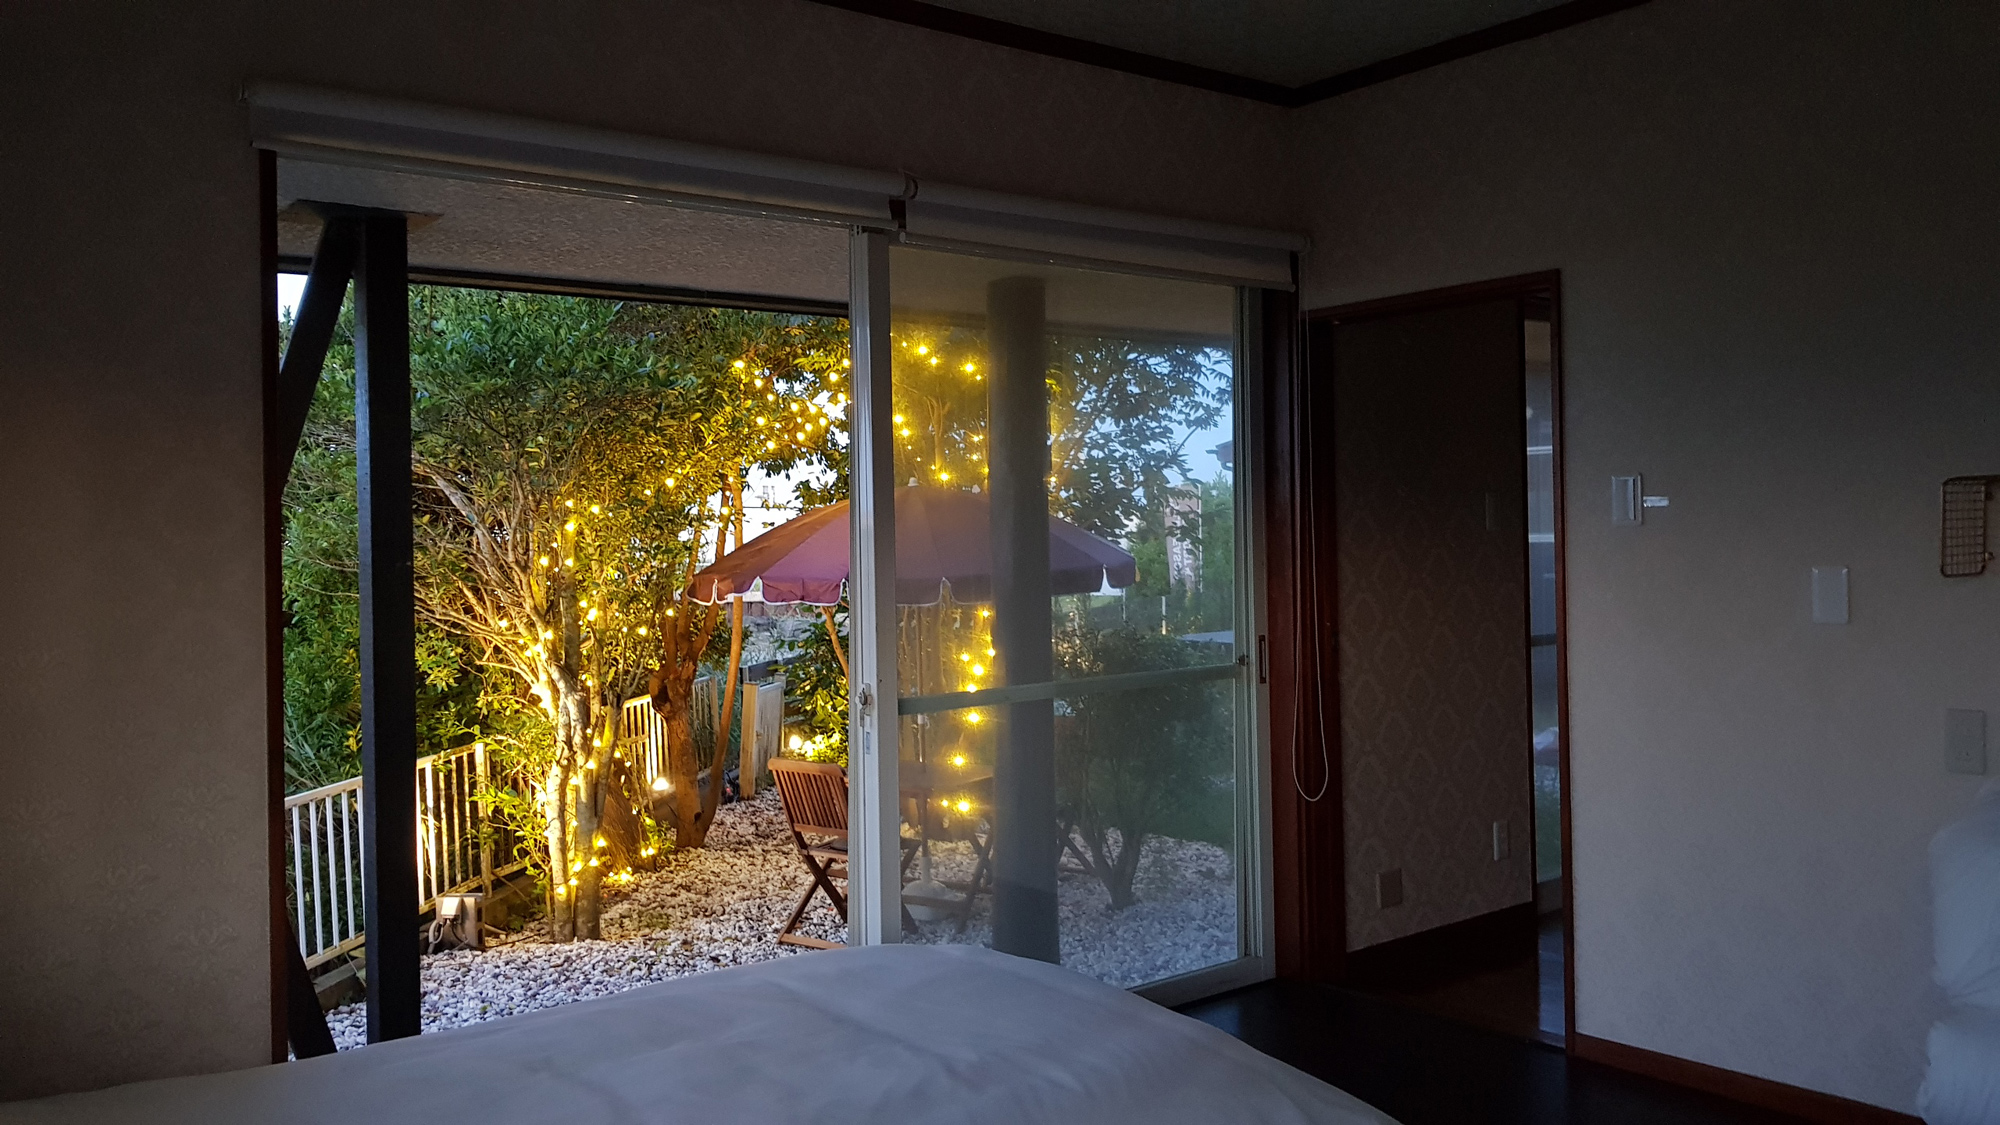 【1F-ベッドルームからの風景】夜はお庭のイルミネーションが点灯します。